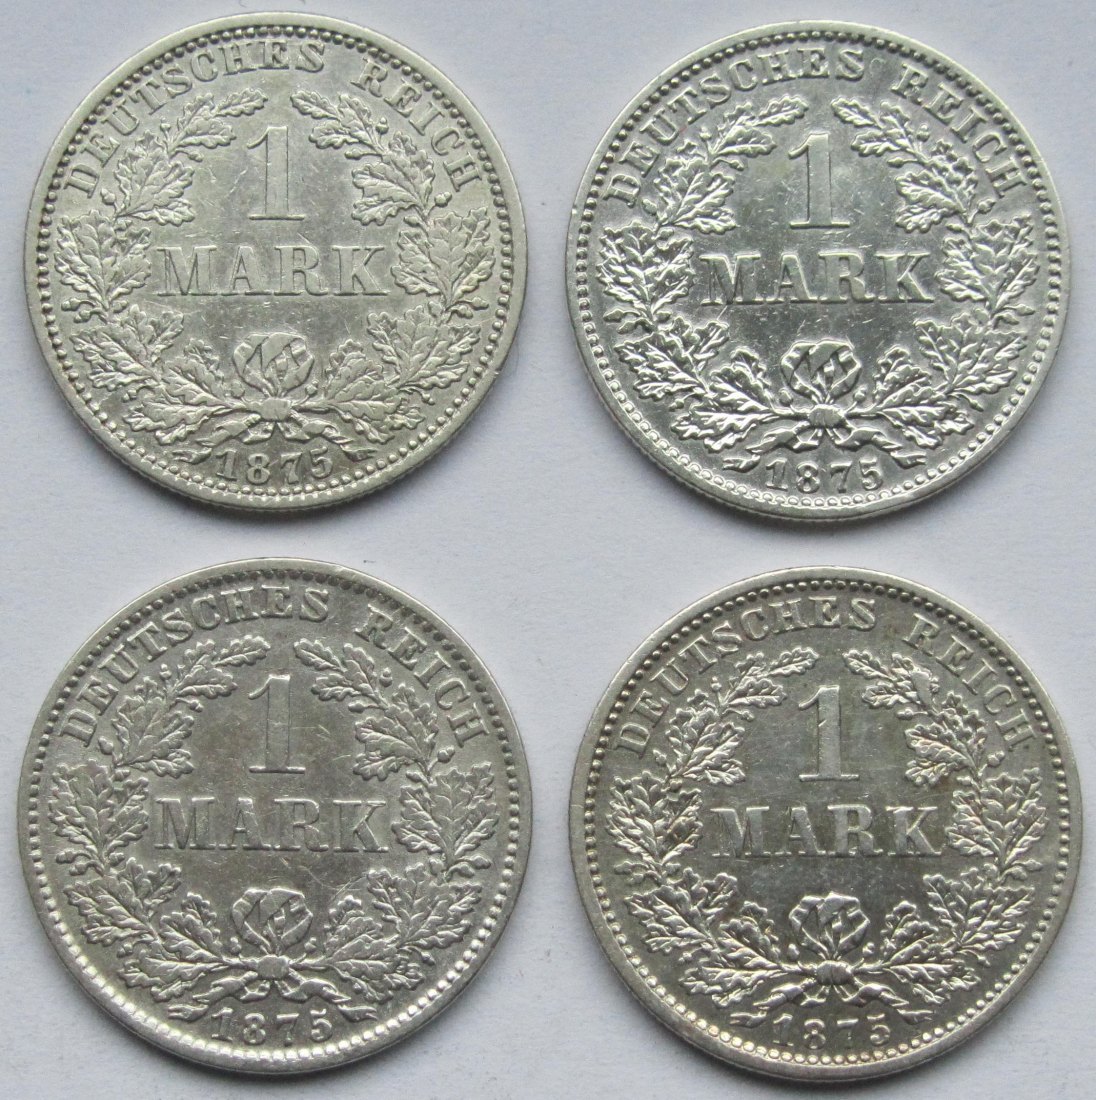  Kaiserreich: 4 x 1 Mark 1875, bessere Erhaltungen   